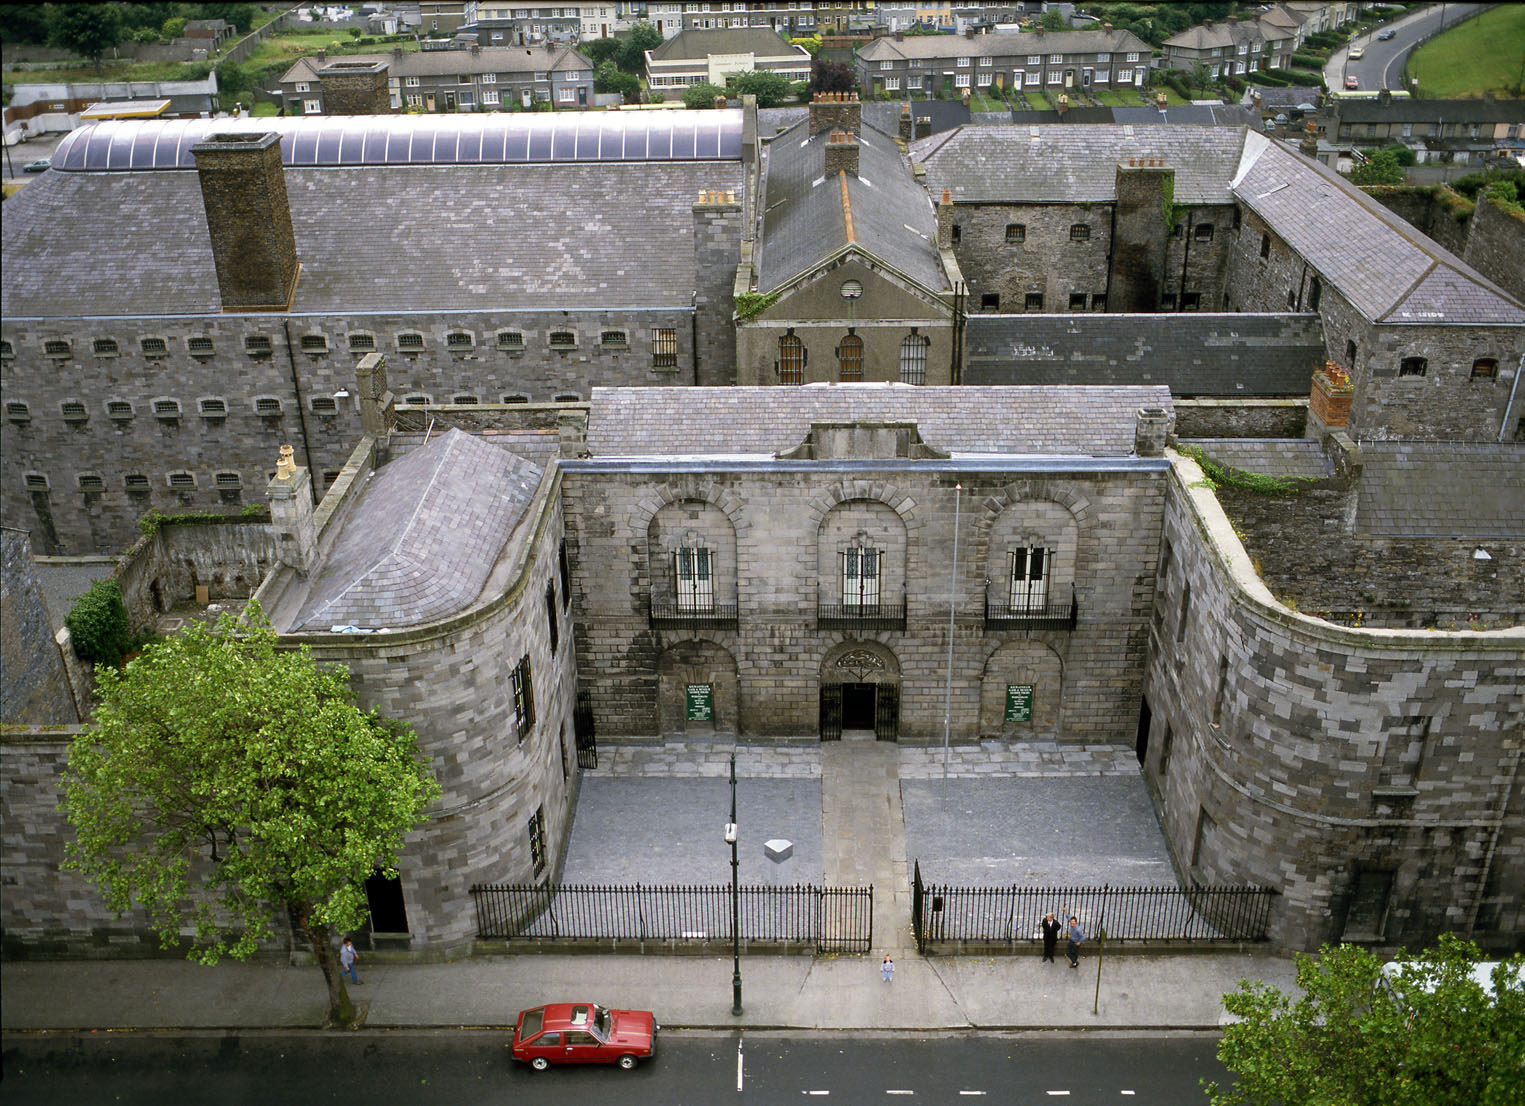 KIlmainham Gaol, Kilmainham,Dublin City, Ireland